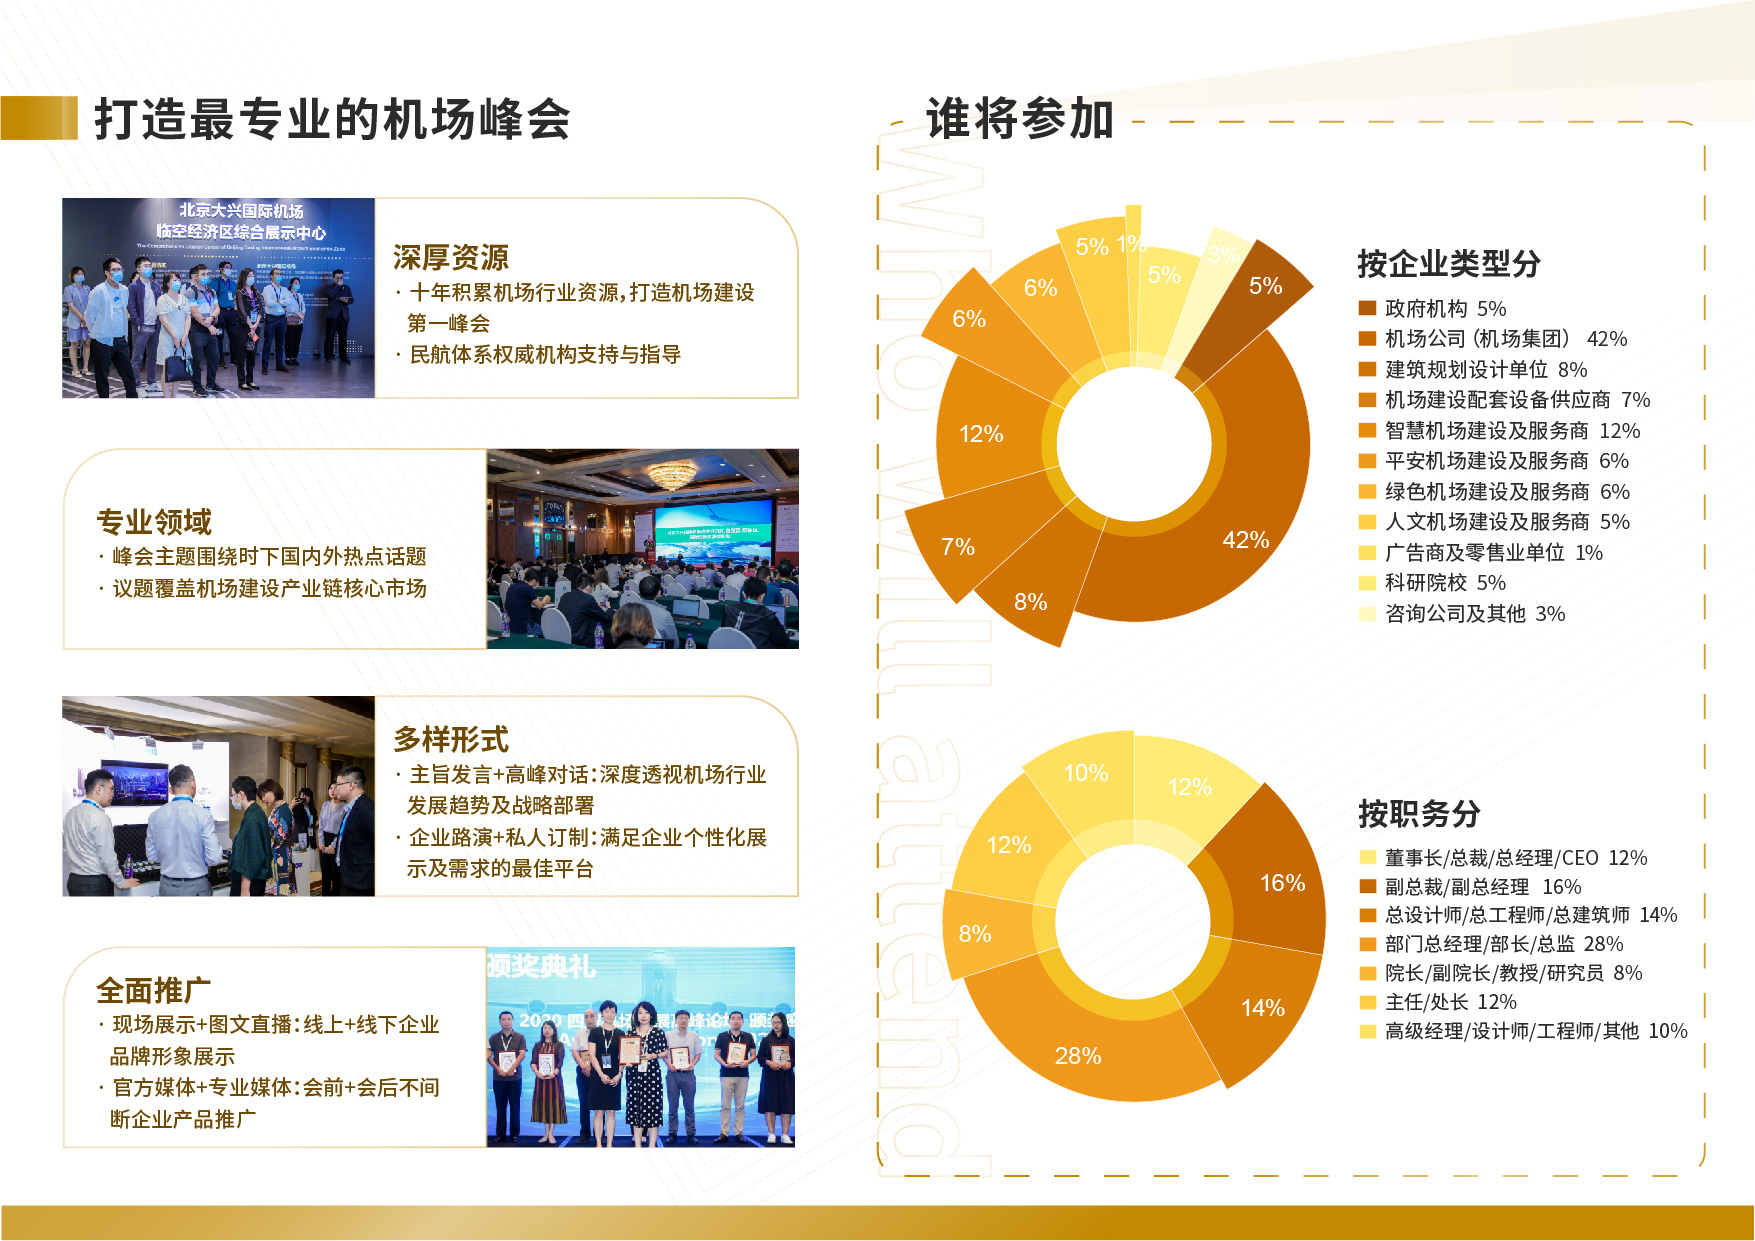 第十二届中国四型机场发展高峰论坛